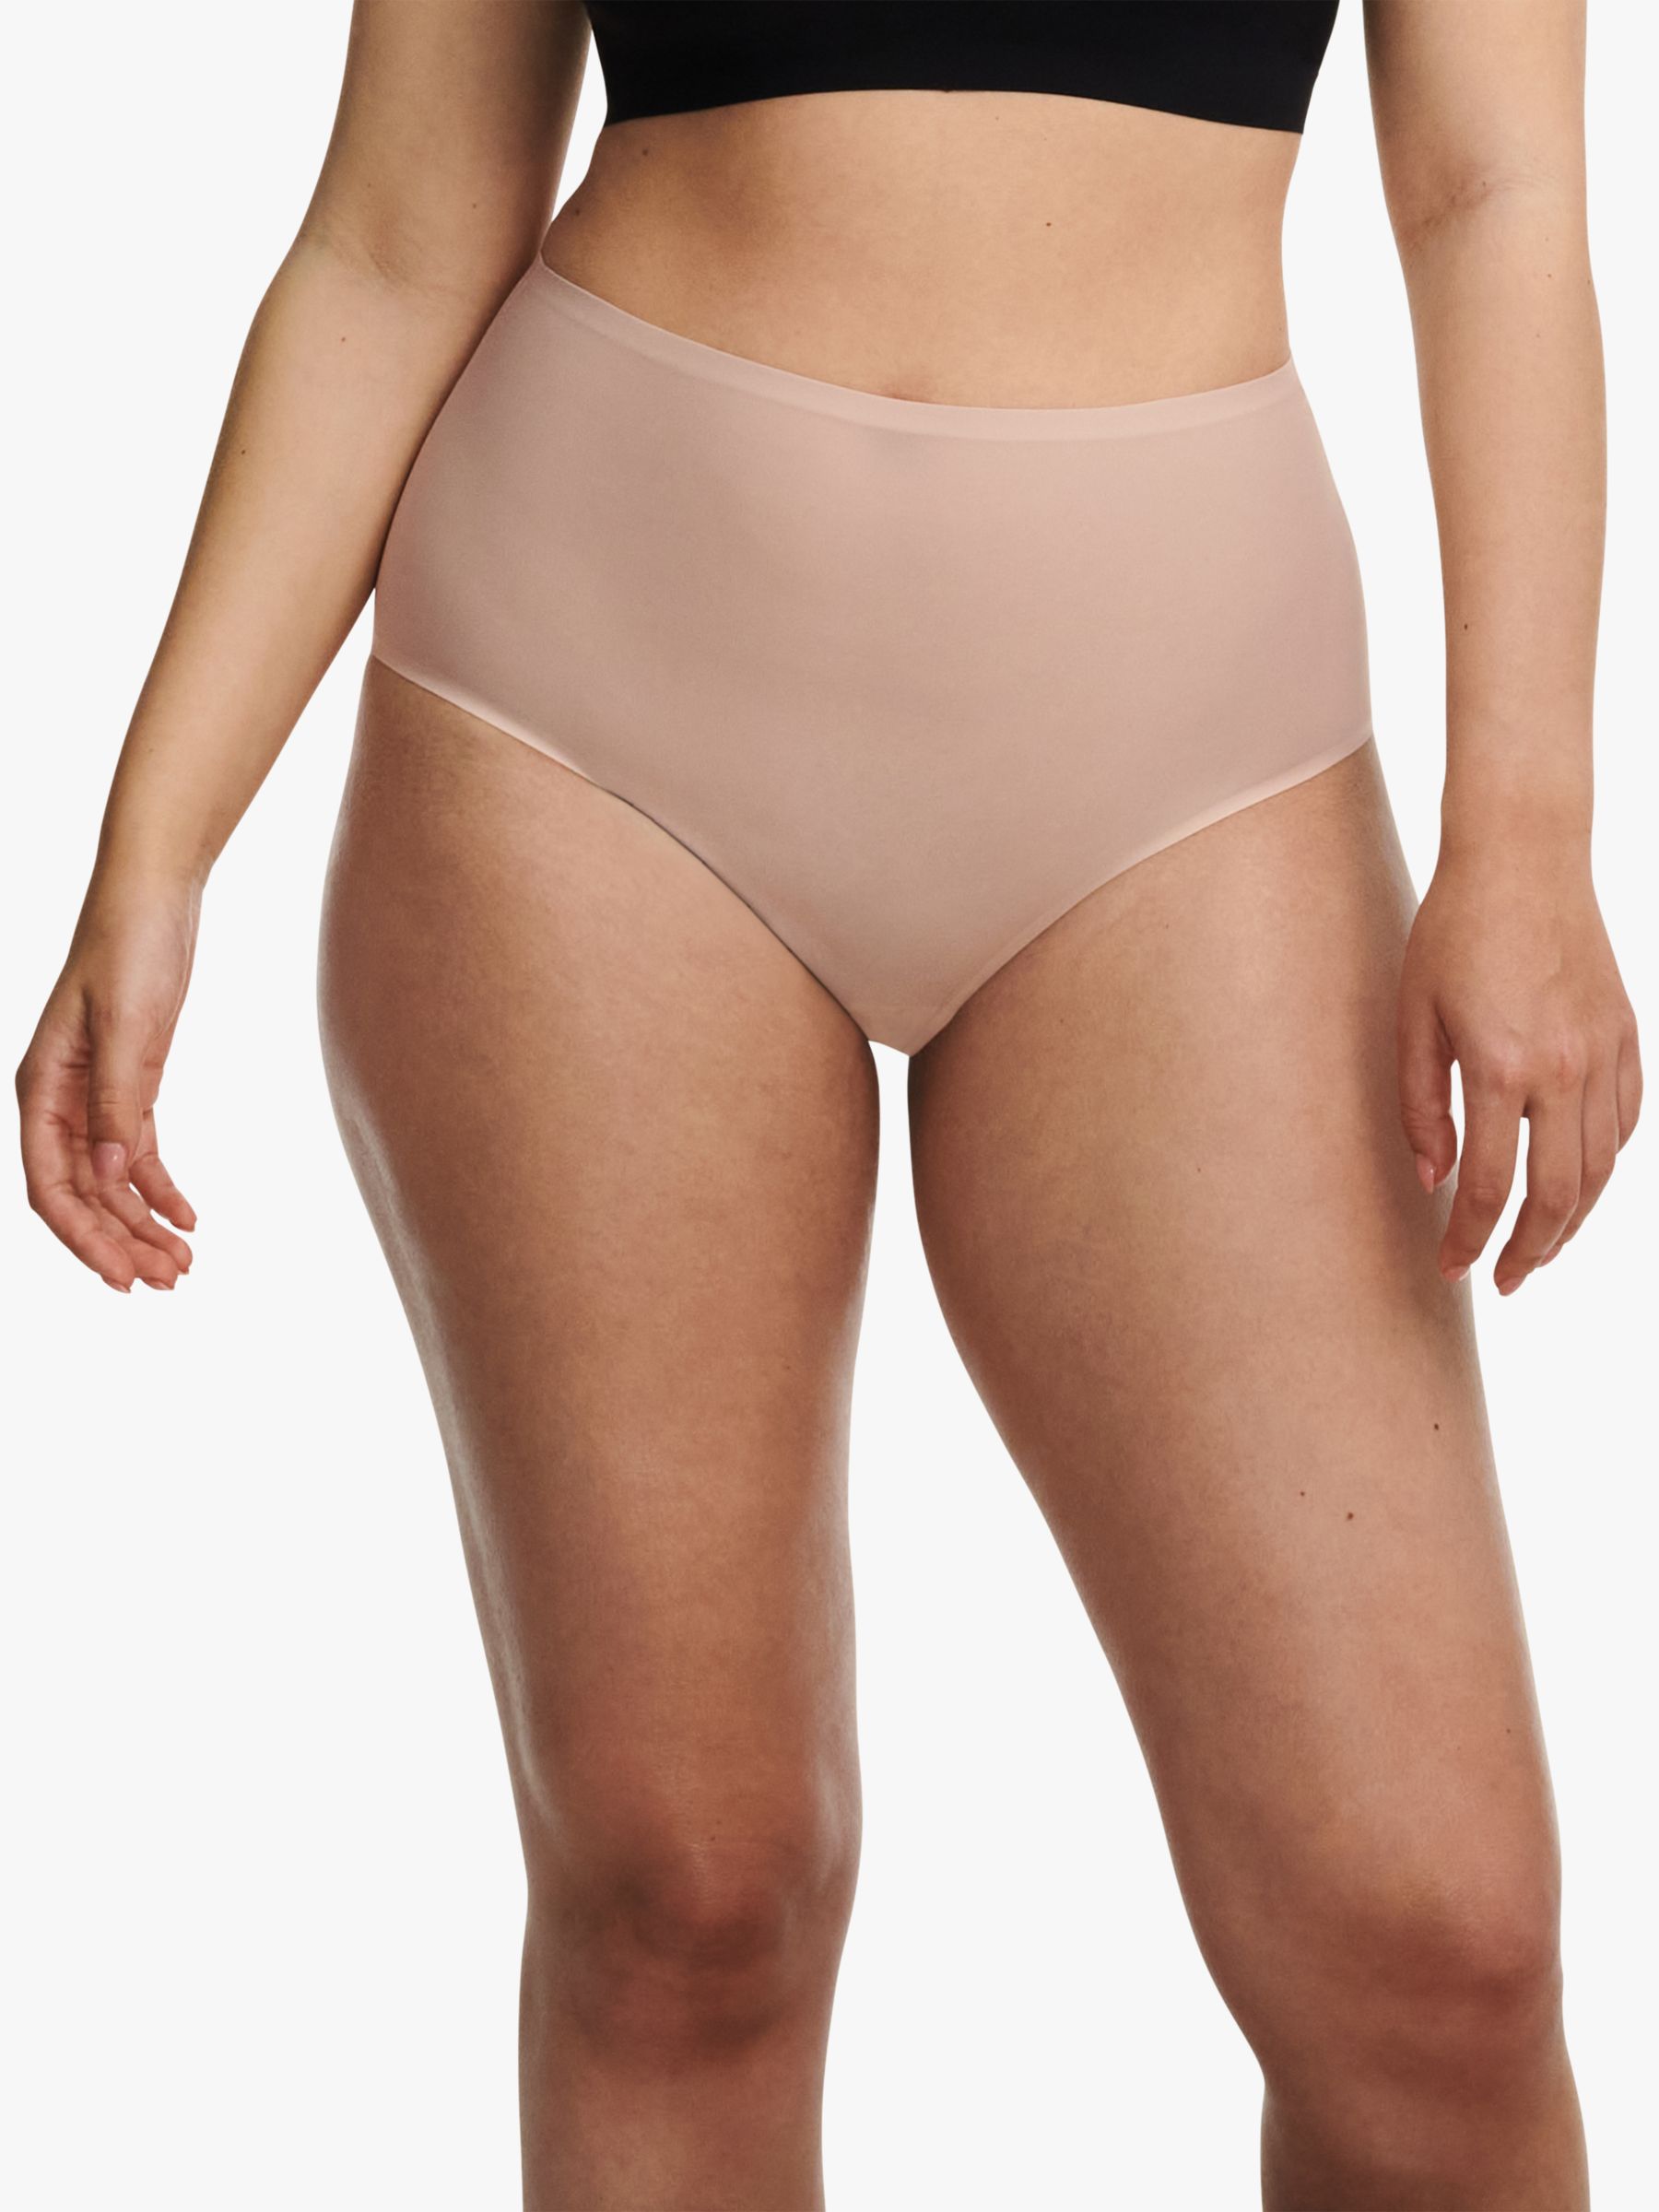 Best Deal for Laura Ashley Girls' Underwear - 10 Pack Stretch Cotton